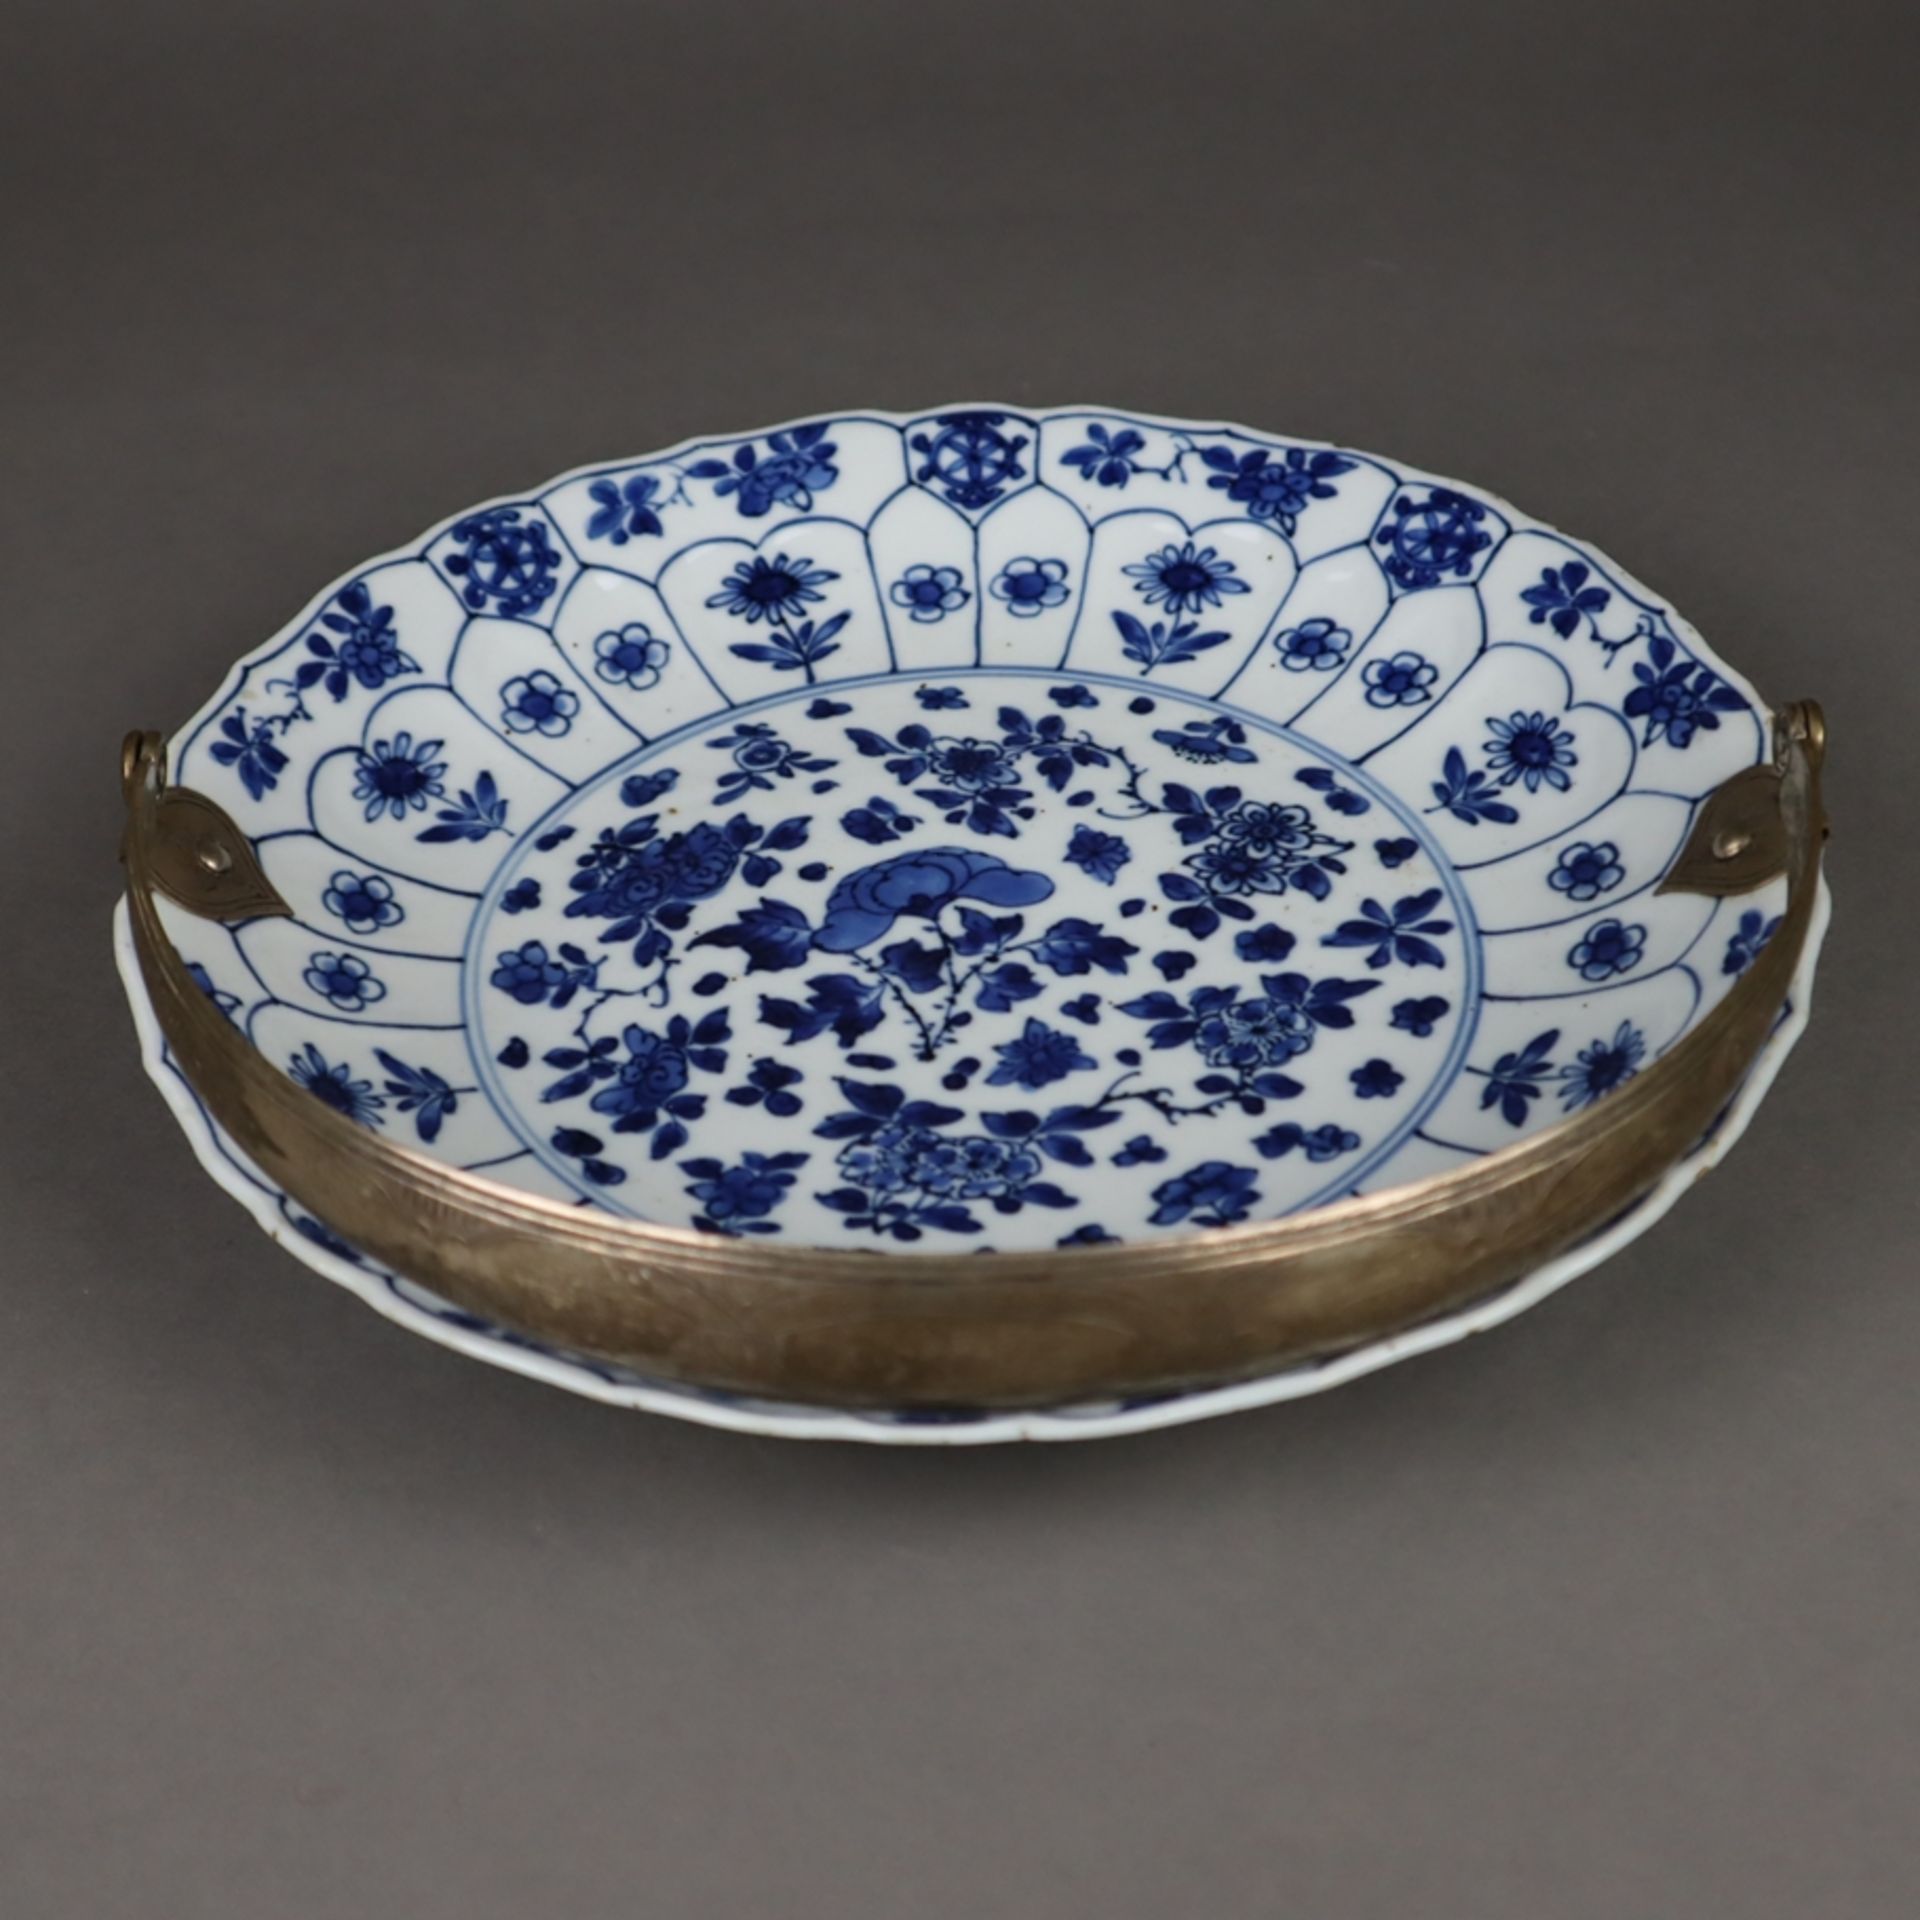 Blau-weißer Teller mit Silbermontur - China, späte Qing-Dynastie, Porzellan, dekoriert in Unterglas - Image 2 of 12